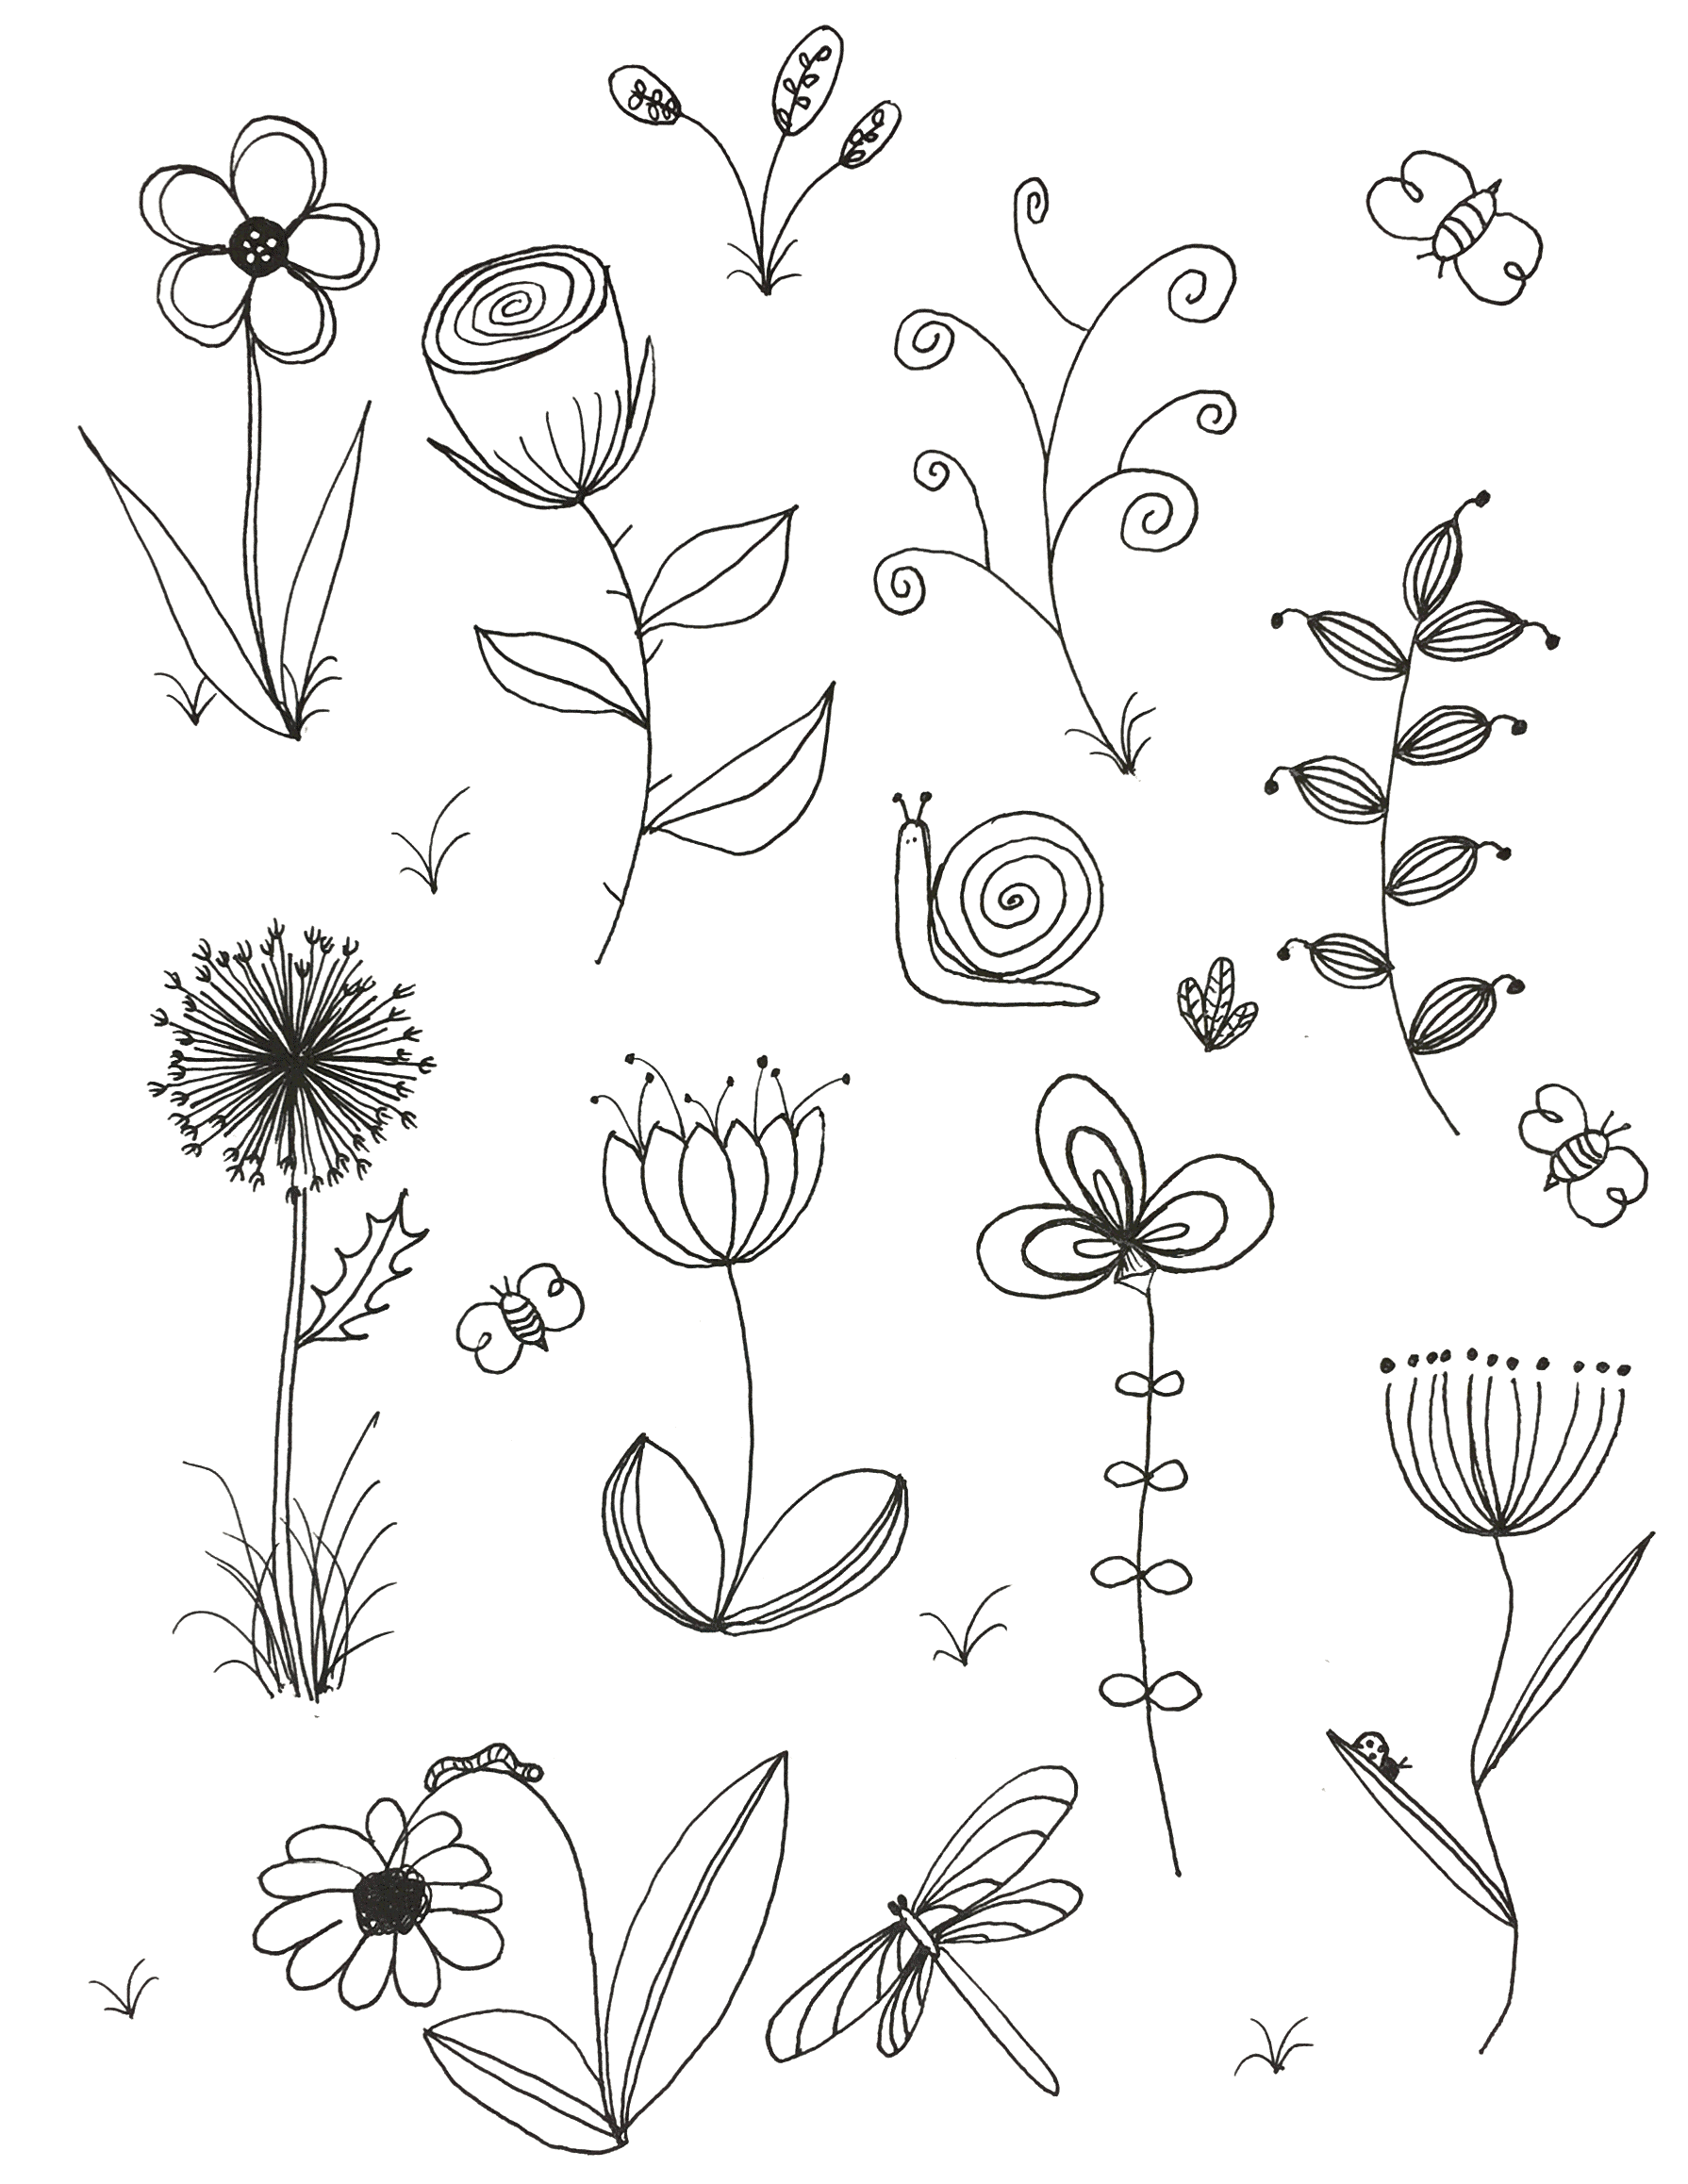 Рисуем цветы с детьми: цветок для рисования поэтапно с детьми